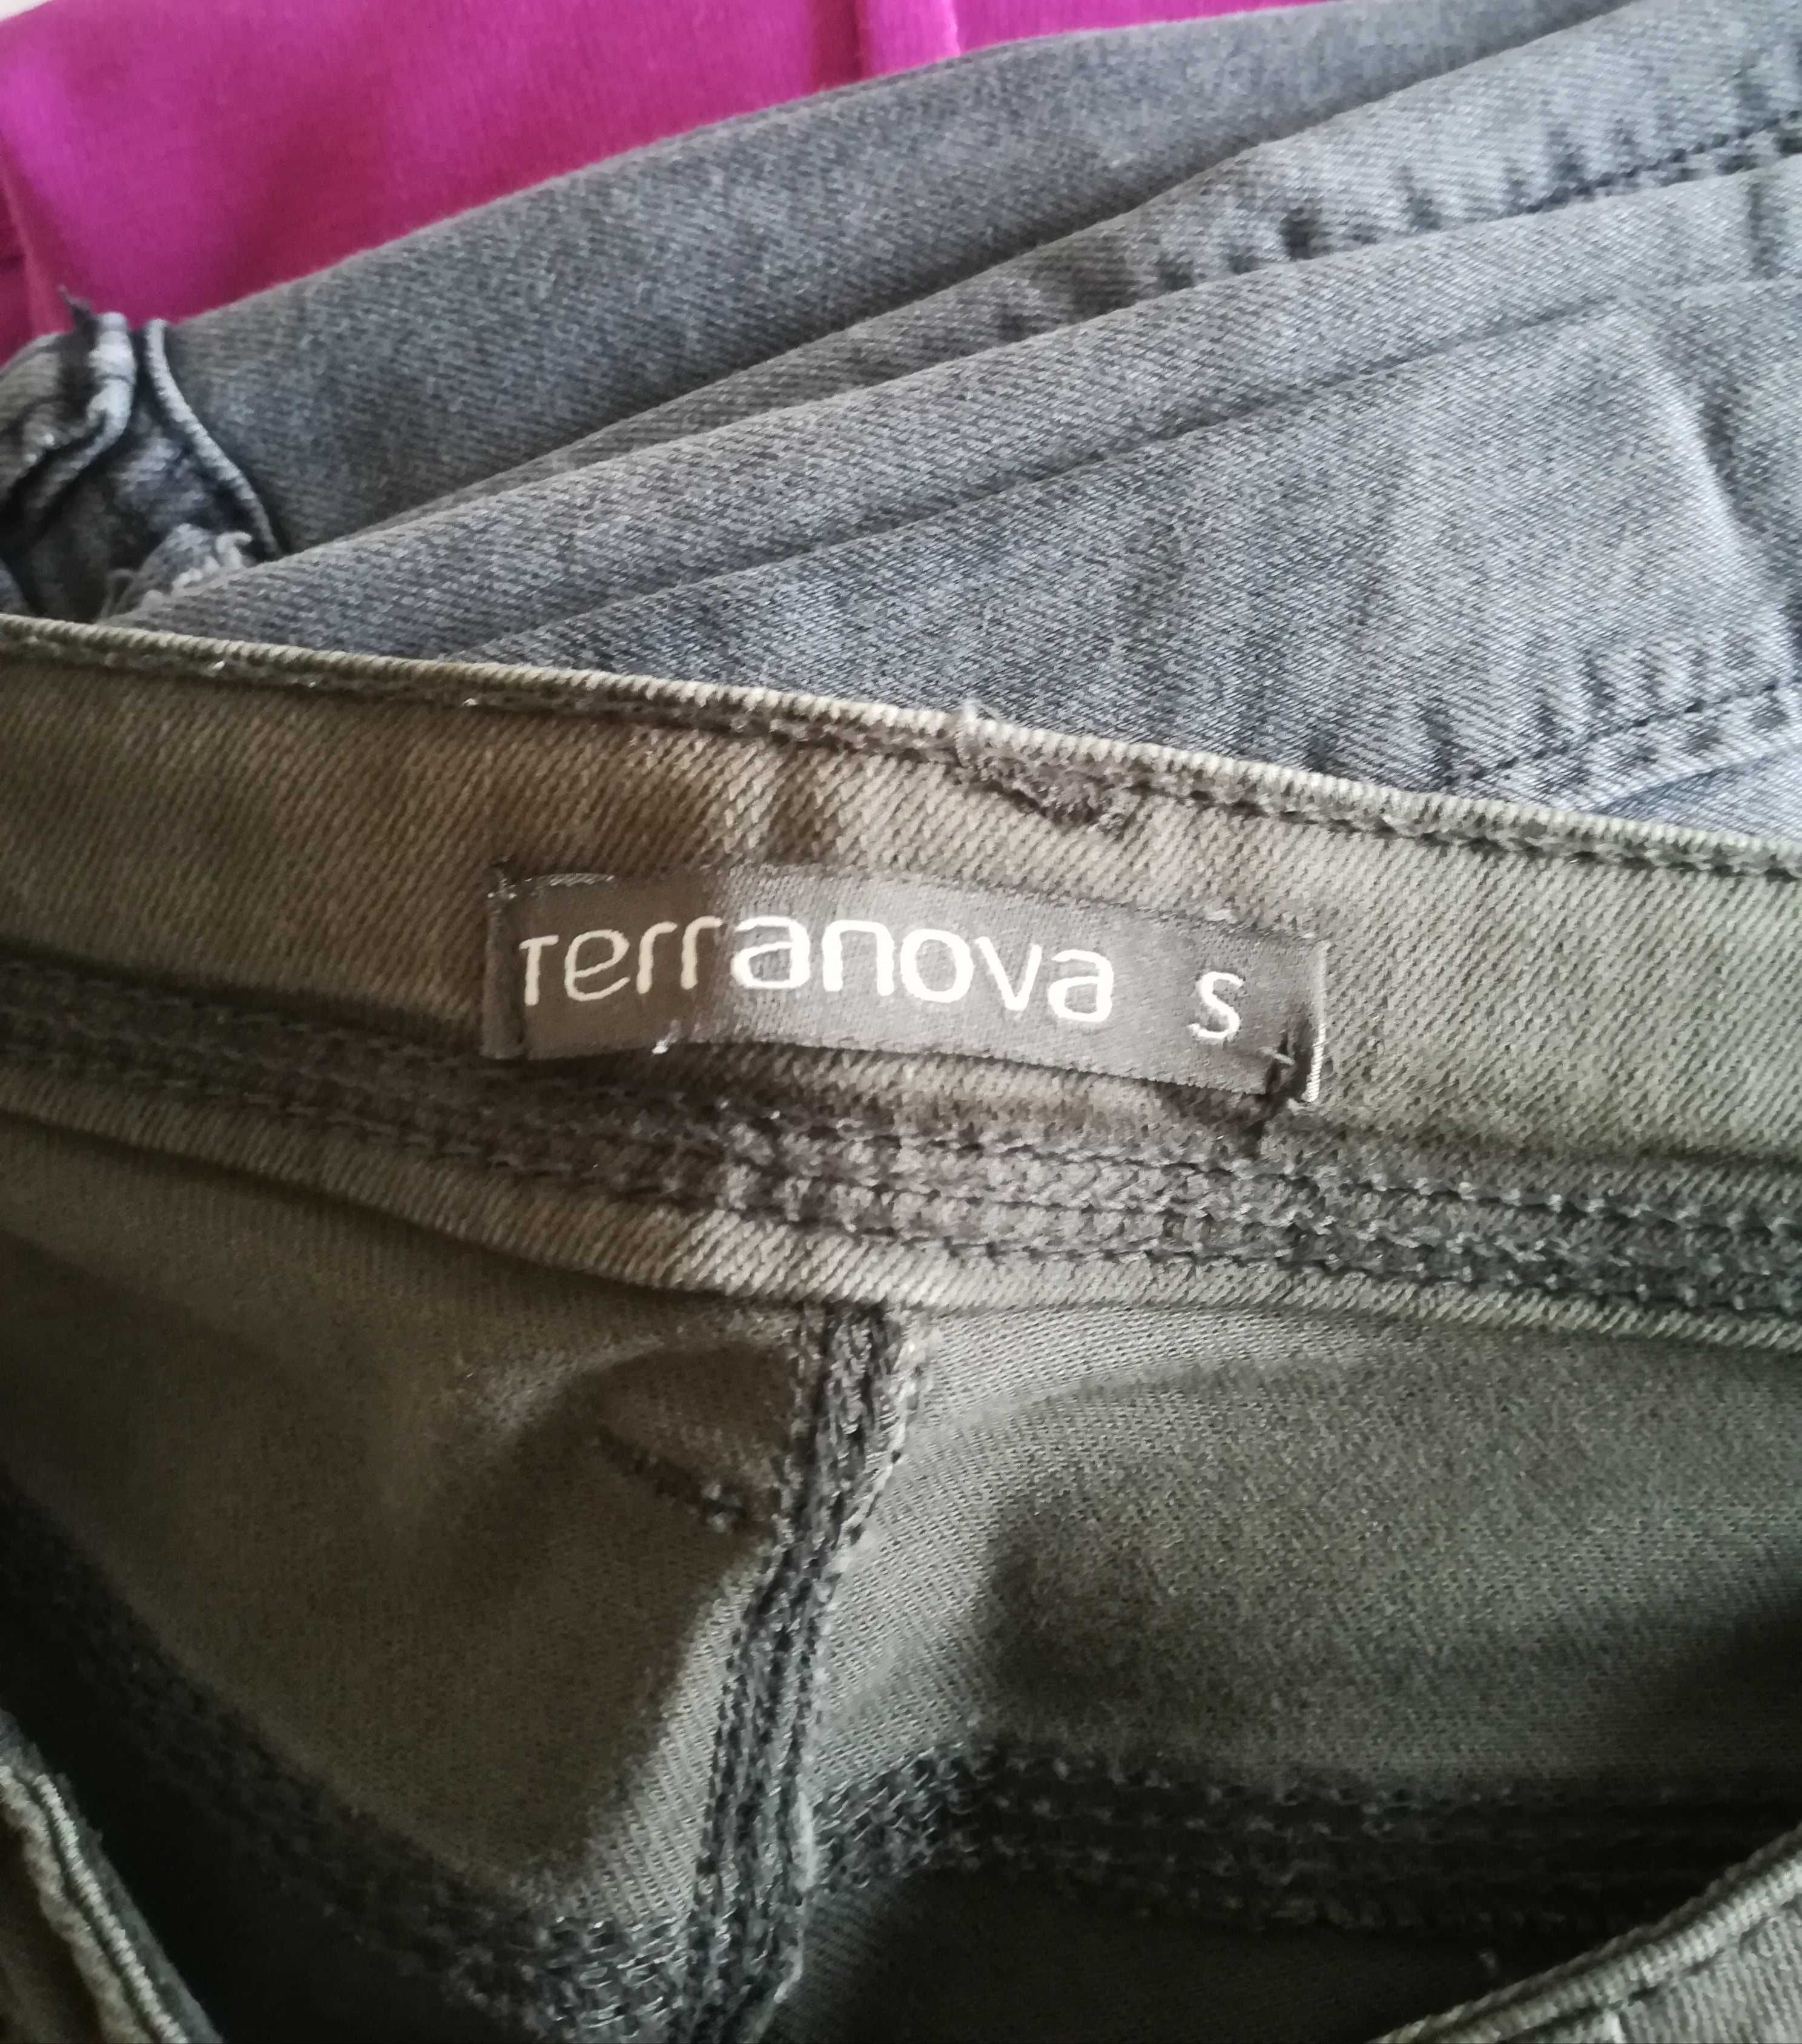 Szare jeansy skinny - Terranova